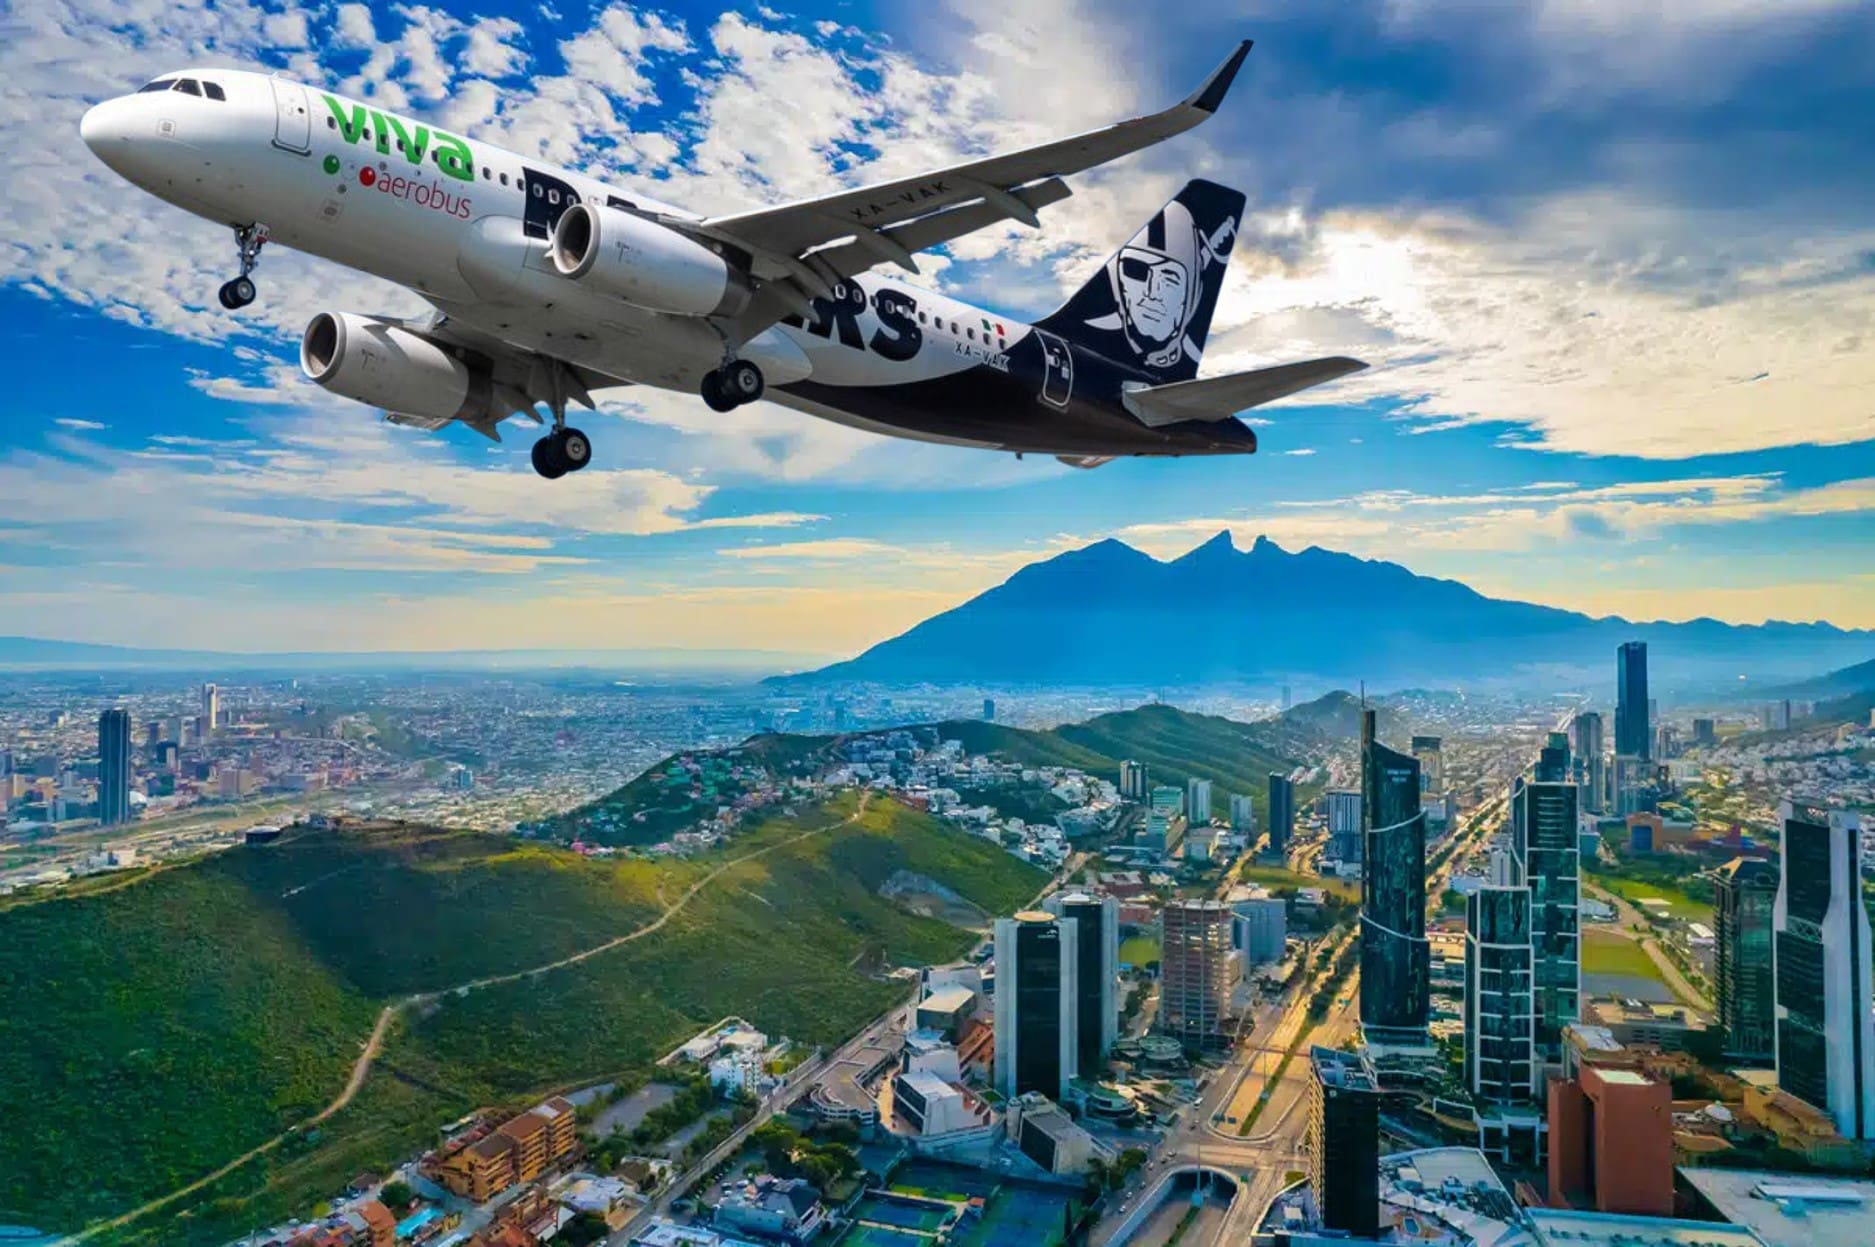 Viva Aerobus Inaugura Nuevo vuelo directo de Monterrey a Orlando